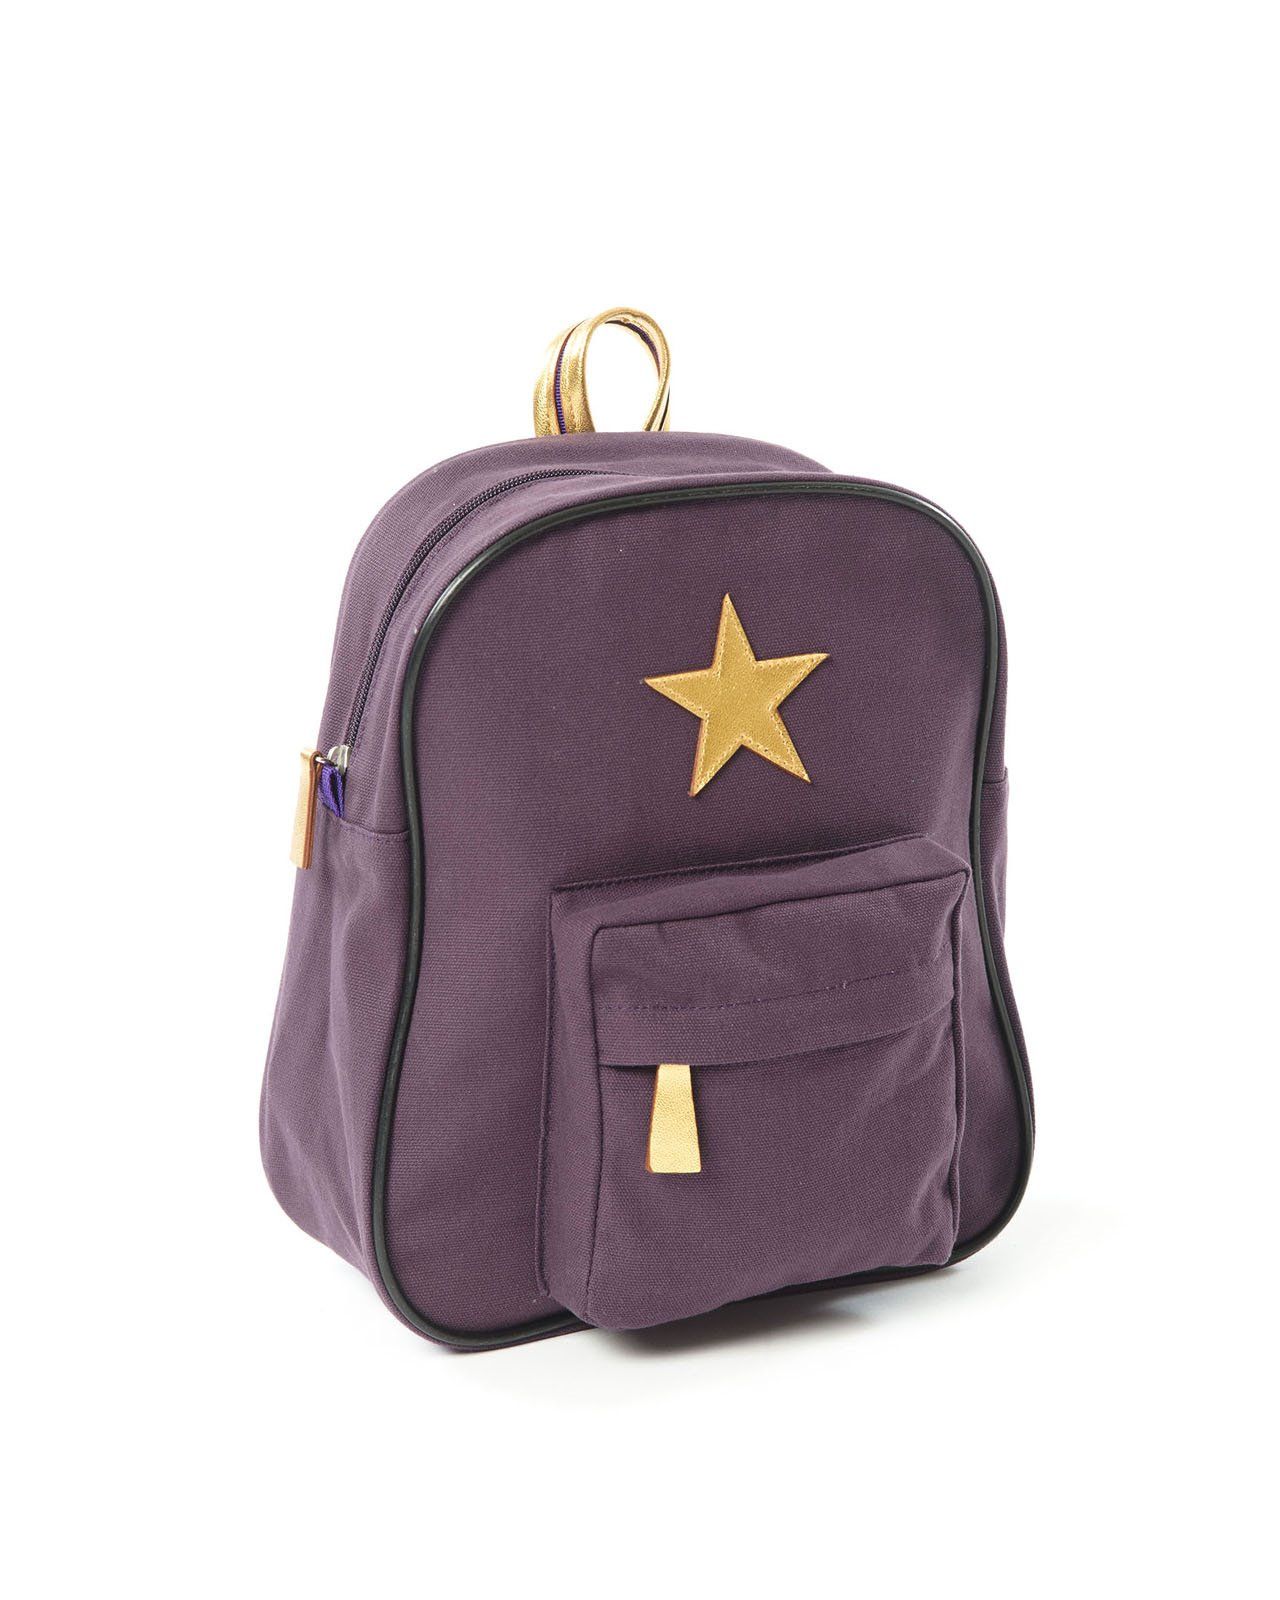 Рюкзак со звездой SmallStuff, фиолетовый, большой